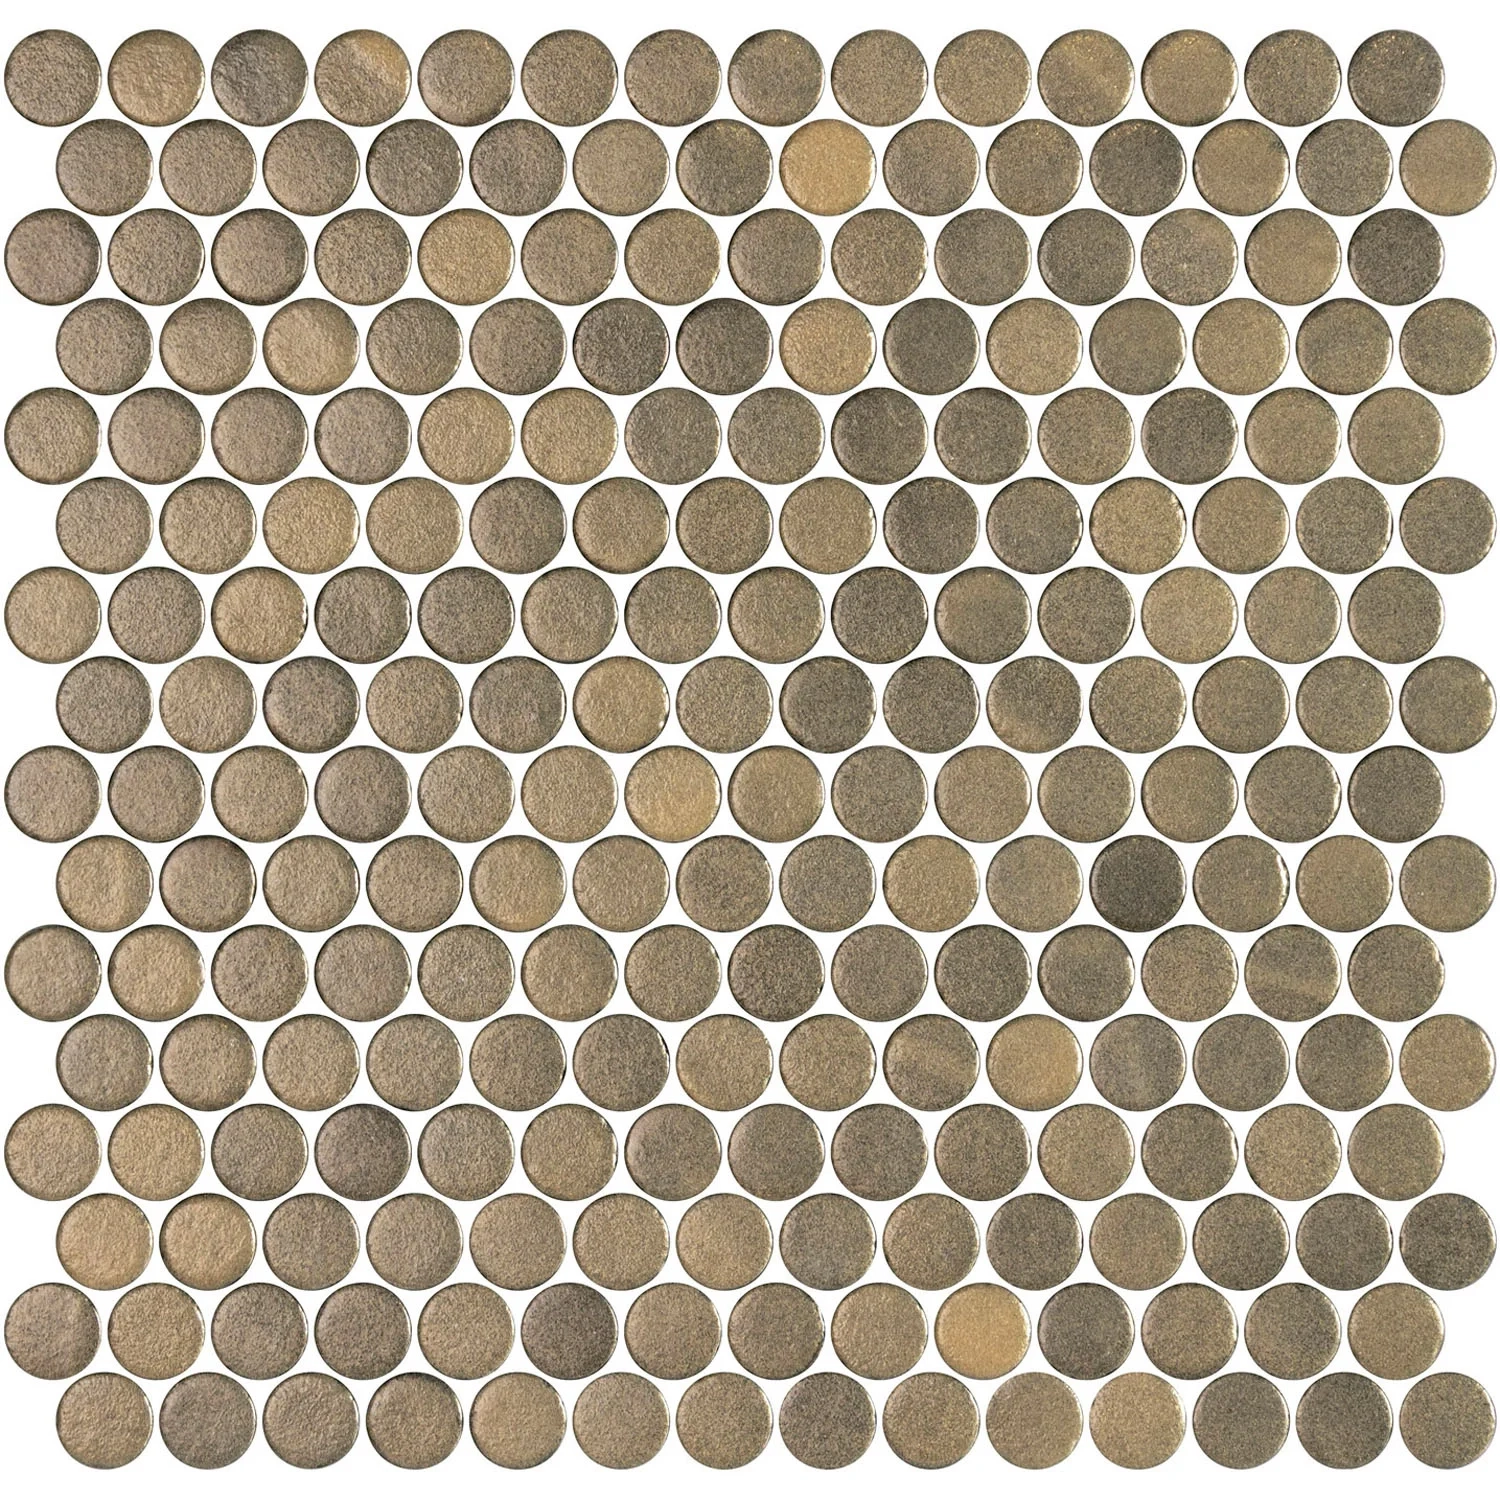 mosaic-onix-penny-stoneglass-30x30-0-98m2-paq-gold-brillant-1